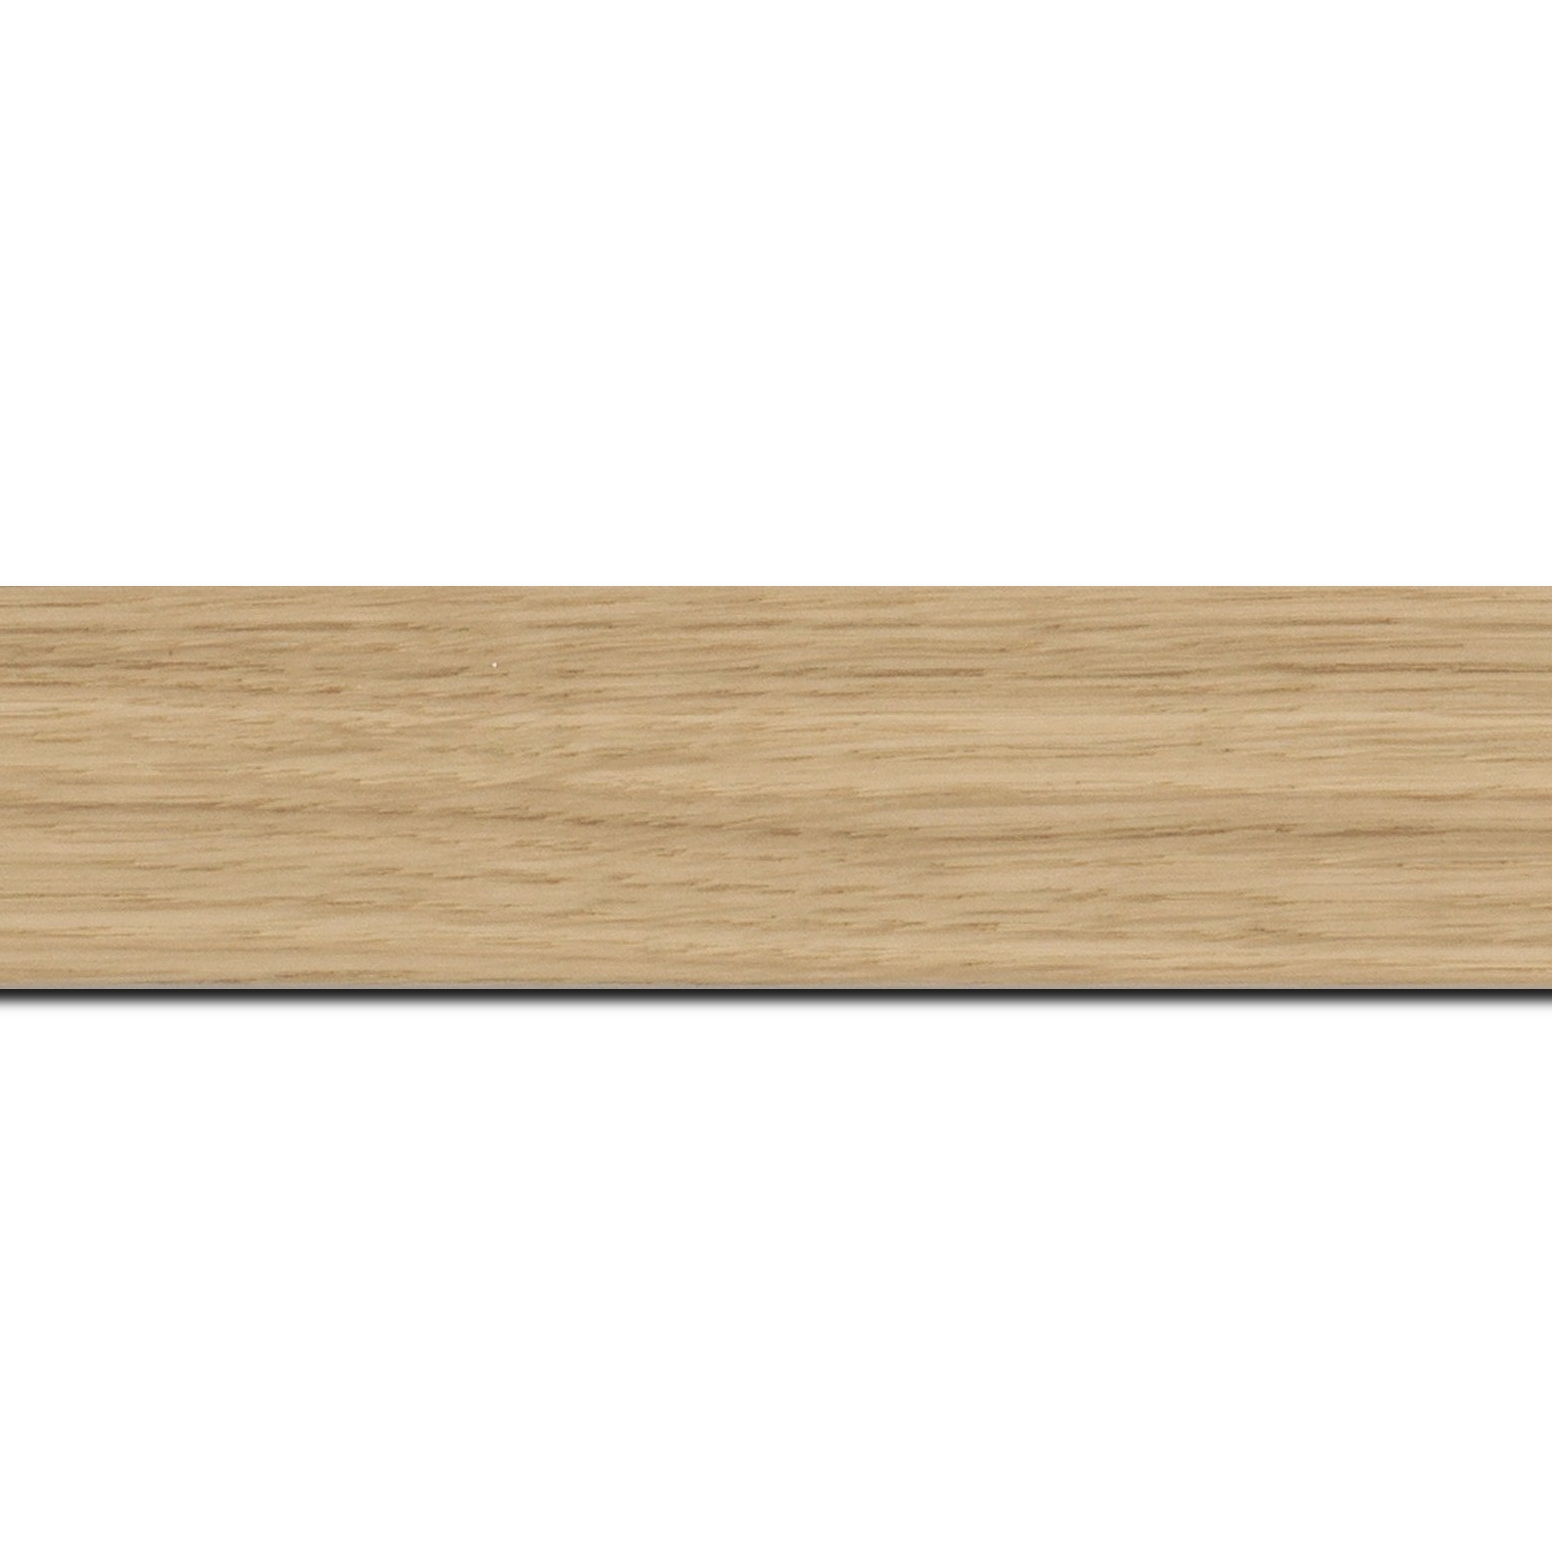 Pack par 12m, bois profil plat largeur 4cm plaquage haut de gamme chêne naturel(longueur baguette pouvant varier entre 2.40m et 3m selon arrivage des bois)